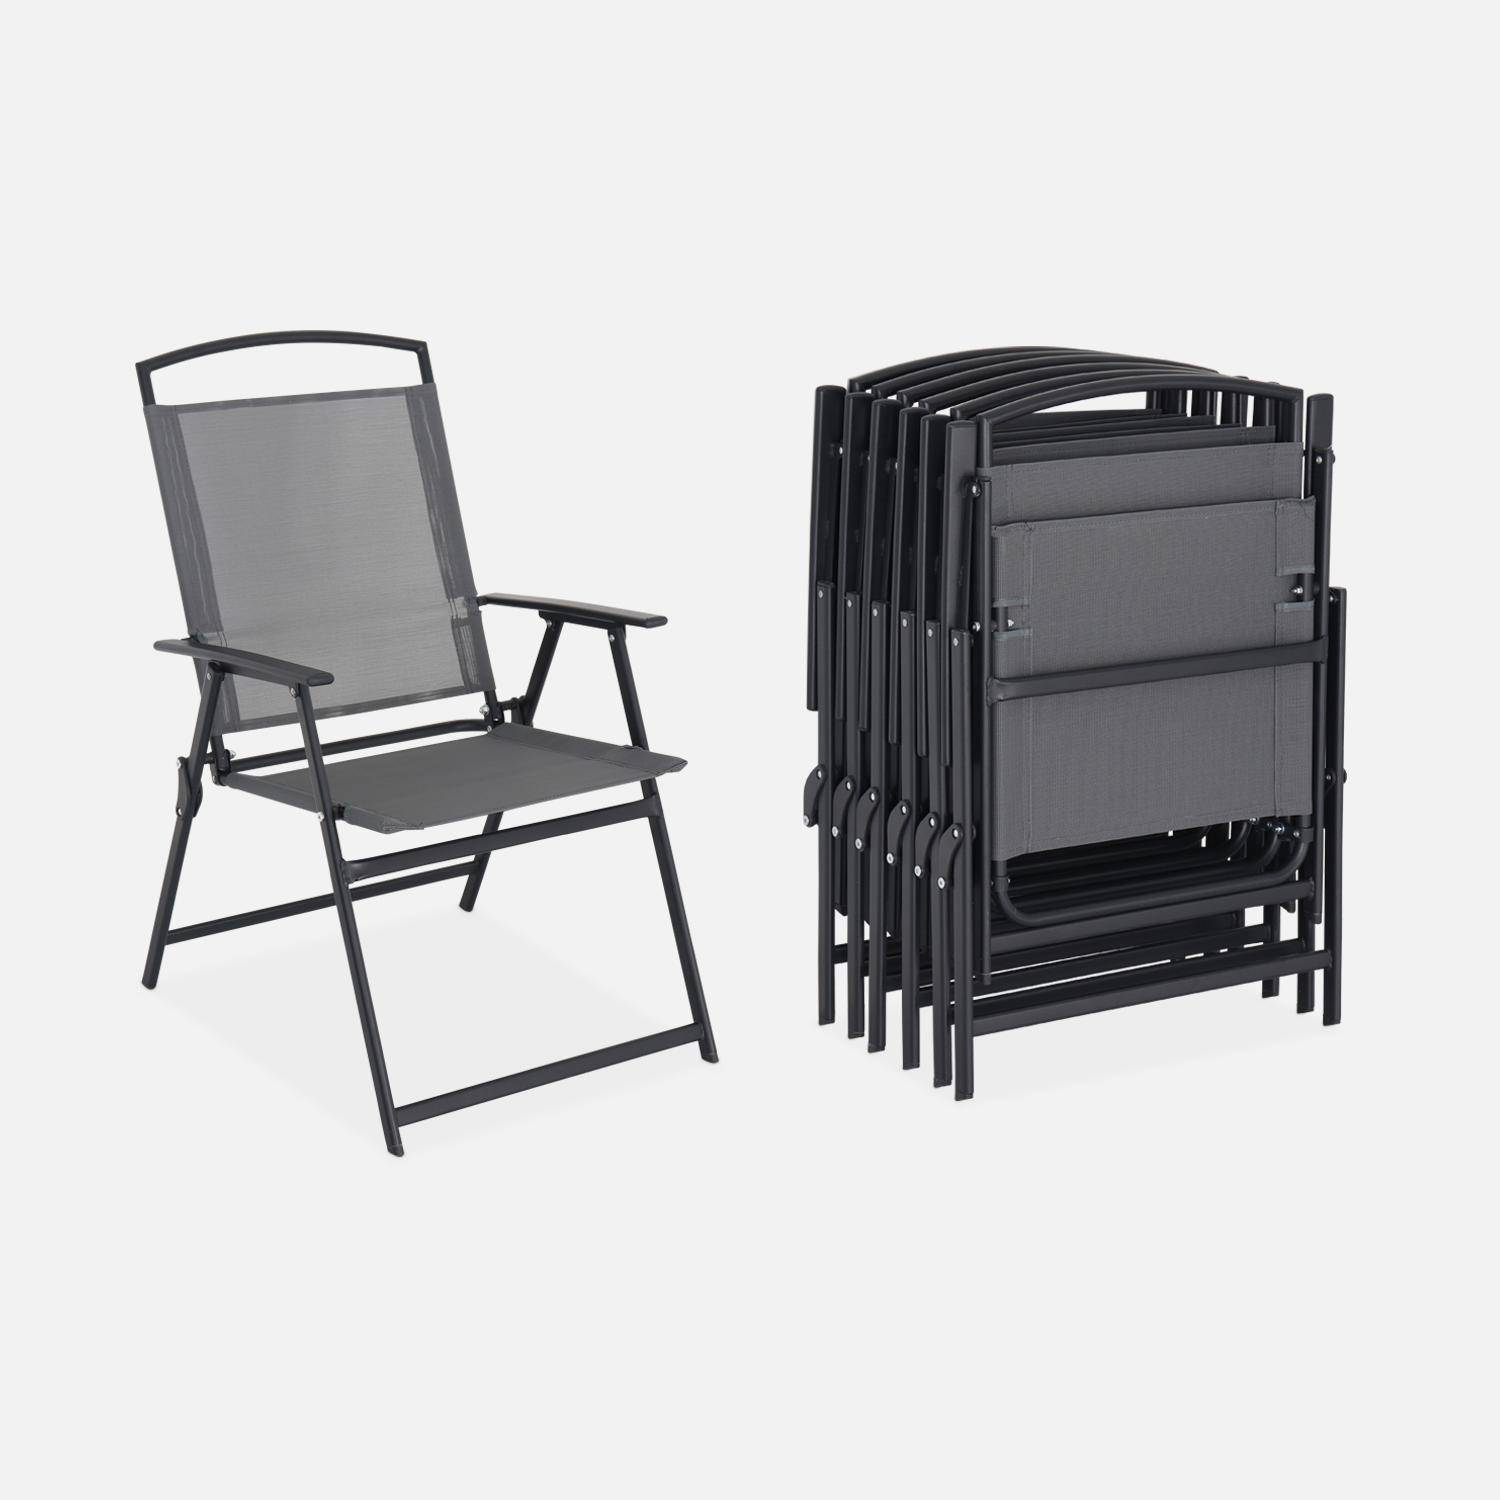 Mesa, silla y sillón de aluminio MSE-1, MSE-2 y MSE-3 estilo